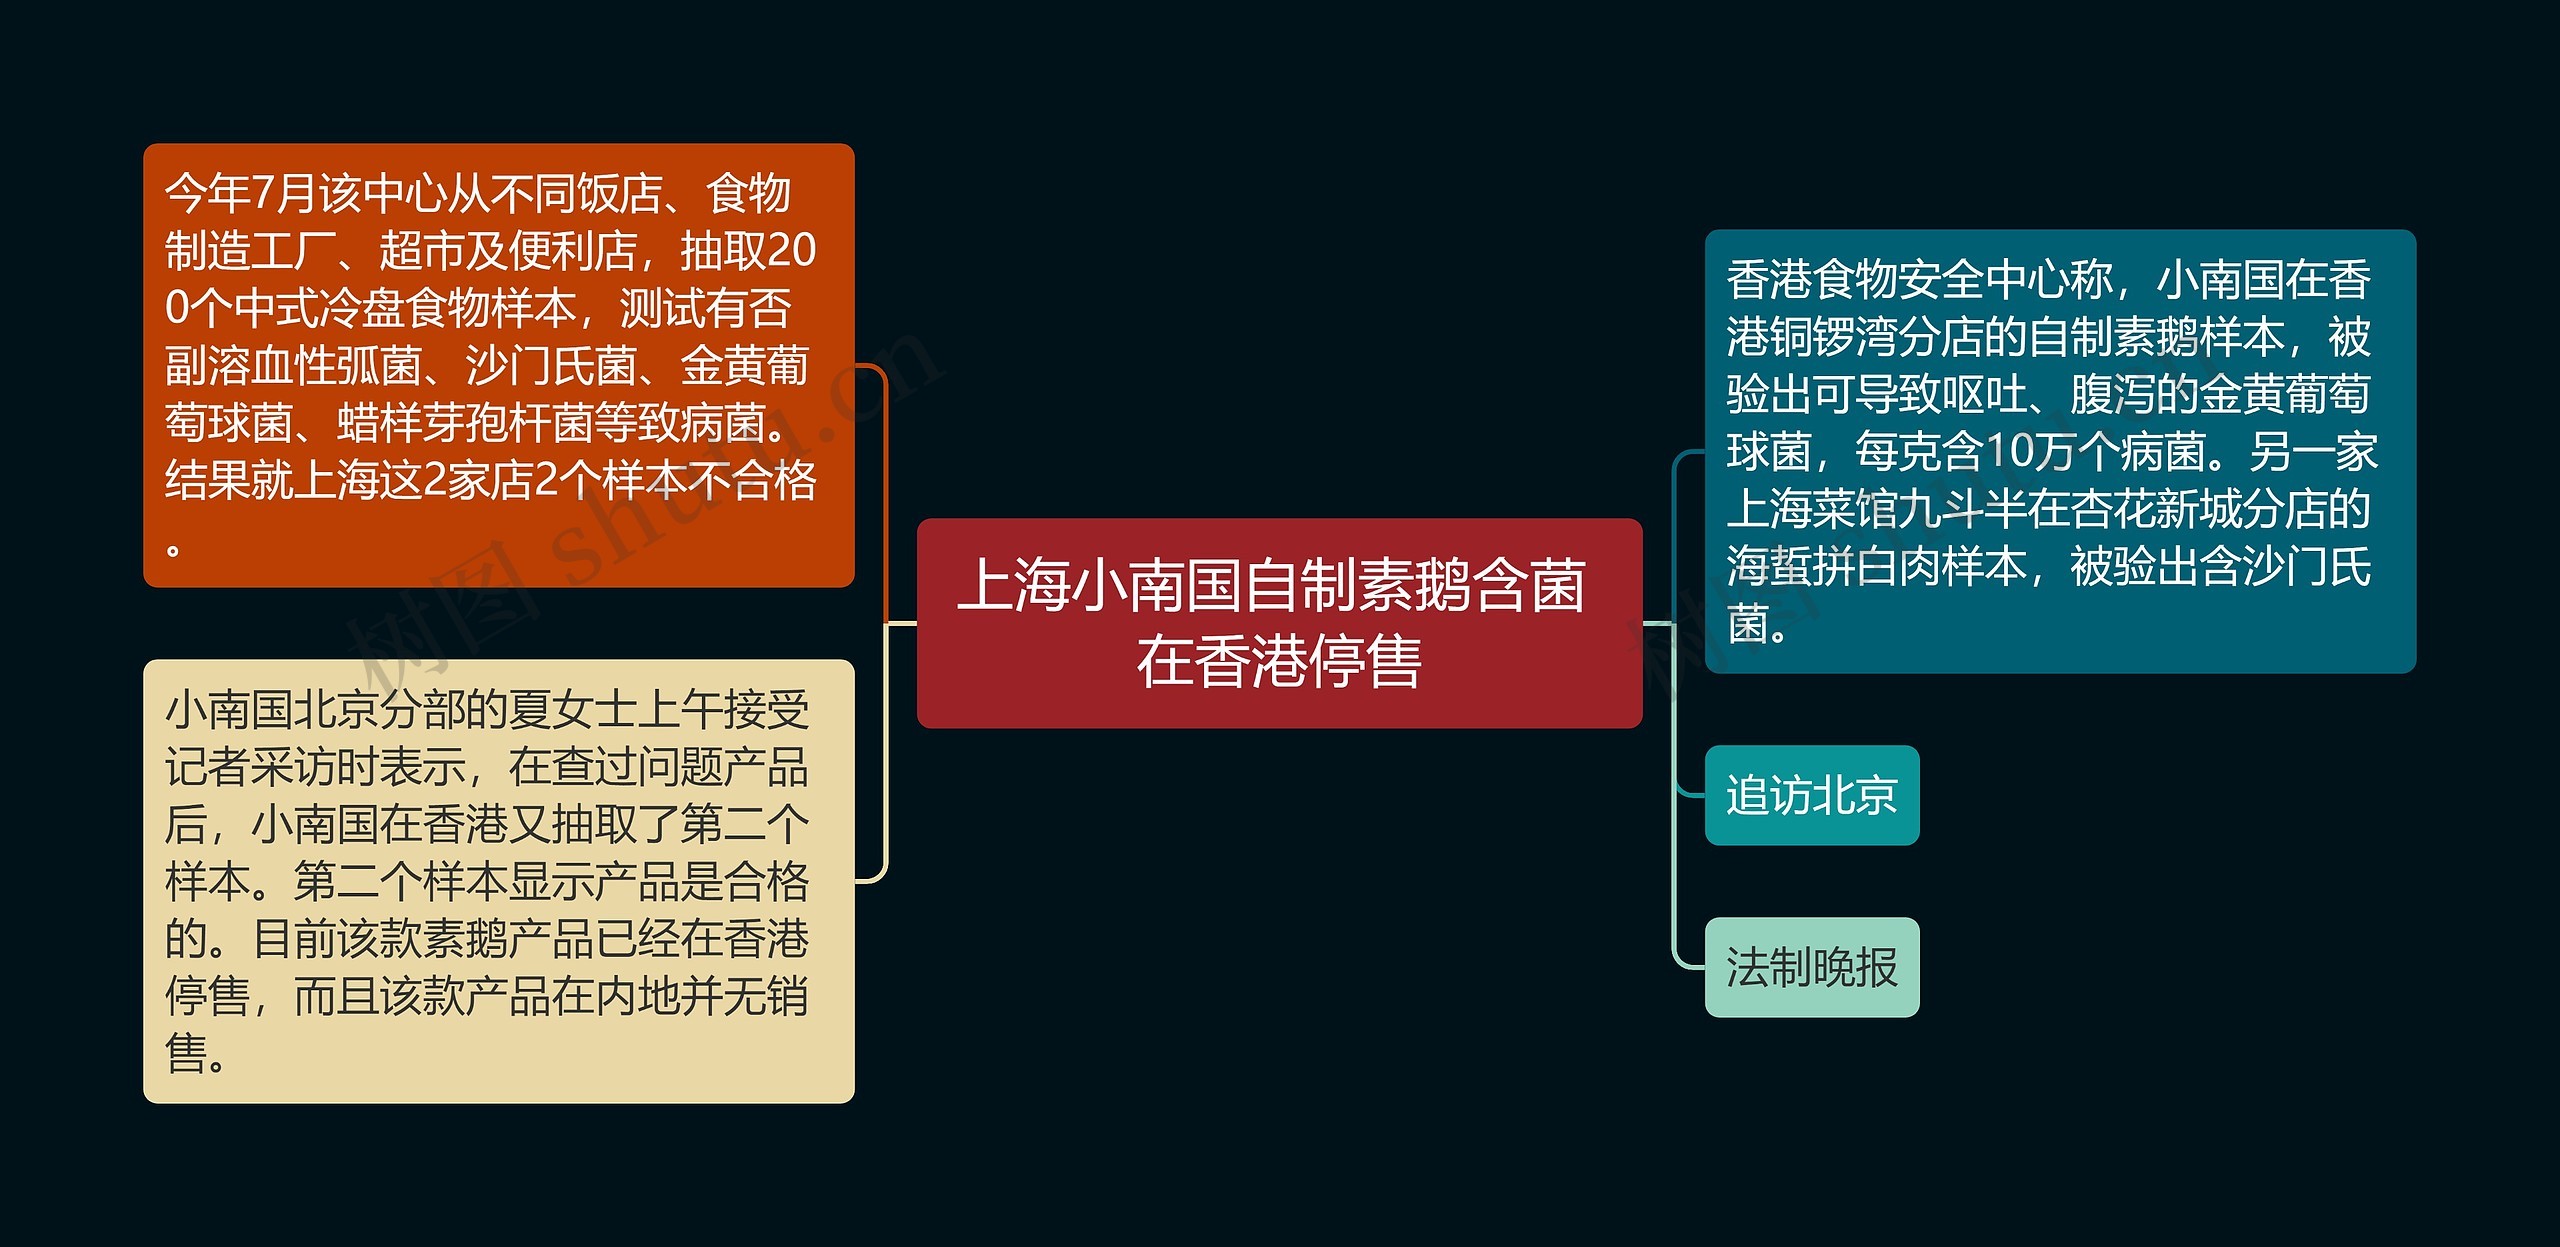 上海小南国自制素鹅含菌 在香港停售思维导图